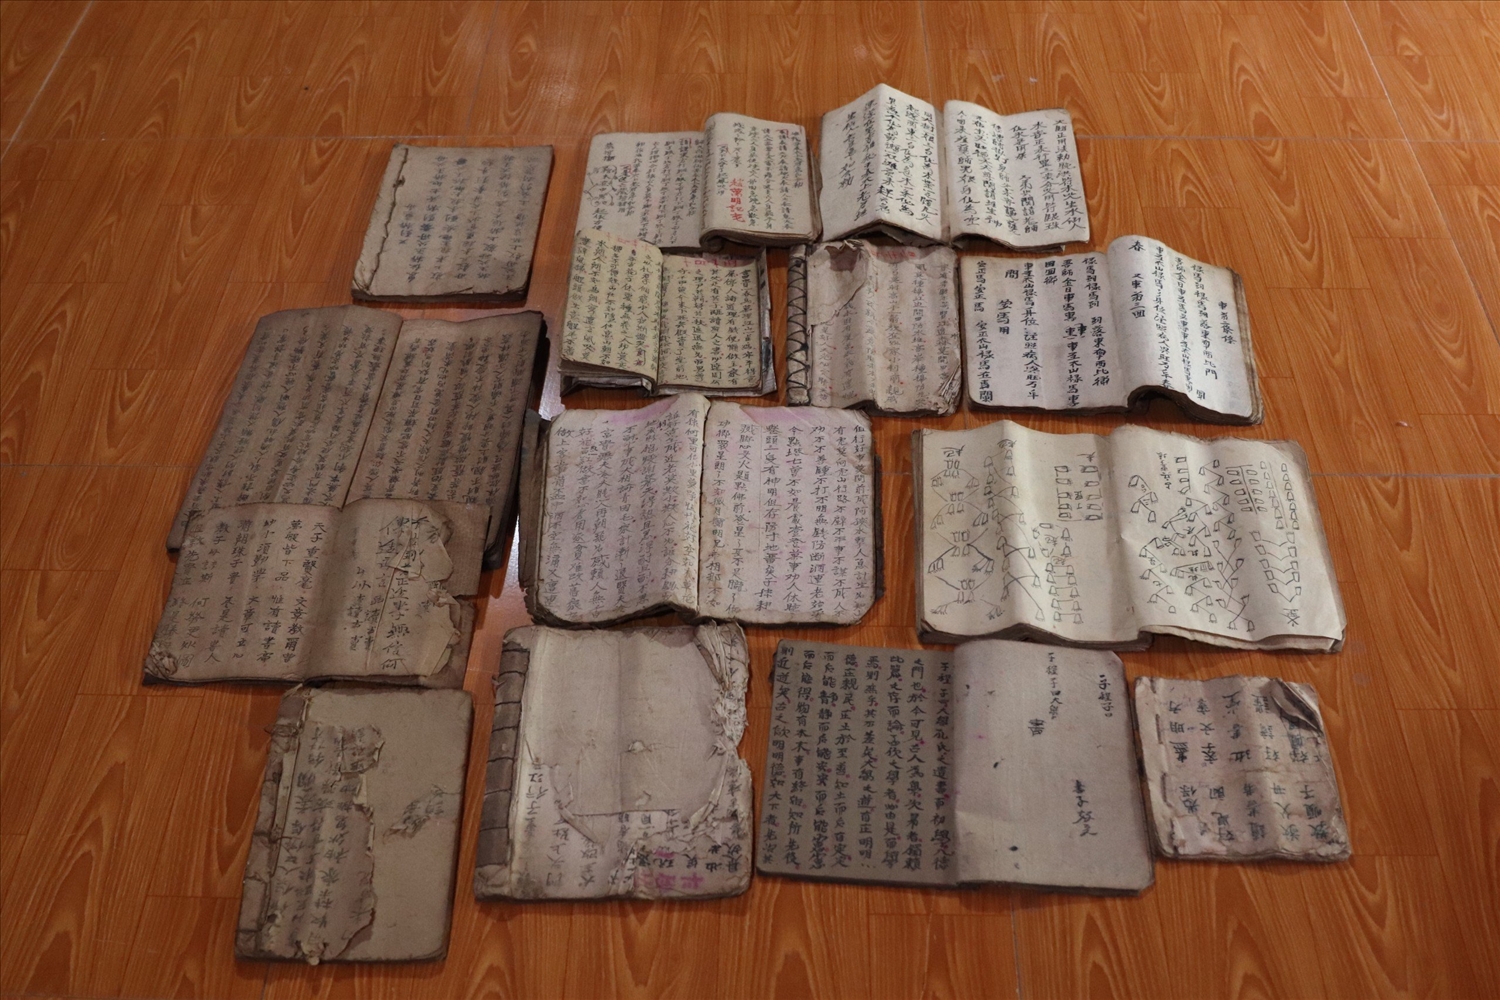 Những cuốn sách cổ của người Dao được viết trên giấy bản mỏng, theo thời gian bị cũ nát, nhòe chữ; nhiều cuốn đã được ông Siểu kỳ công chép lại